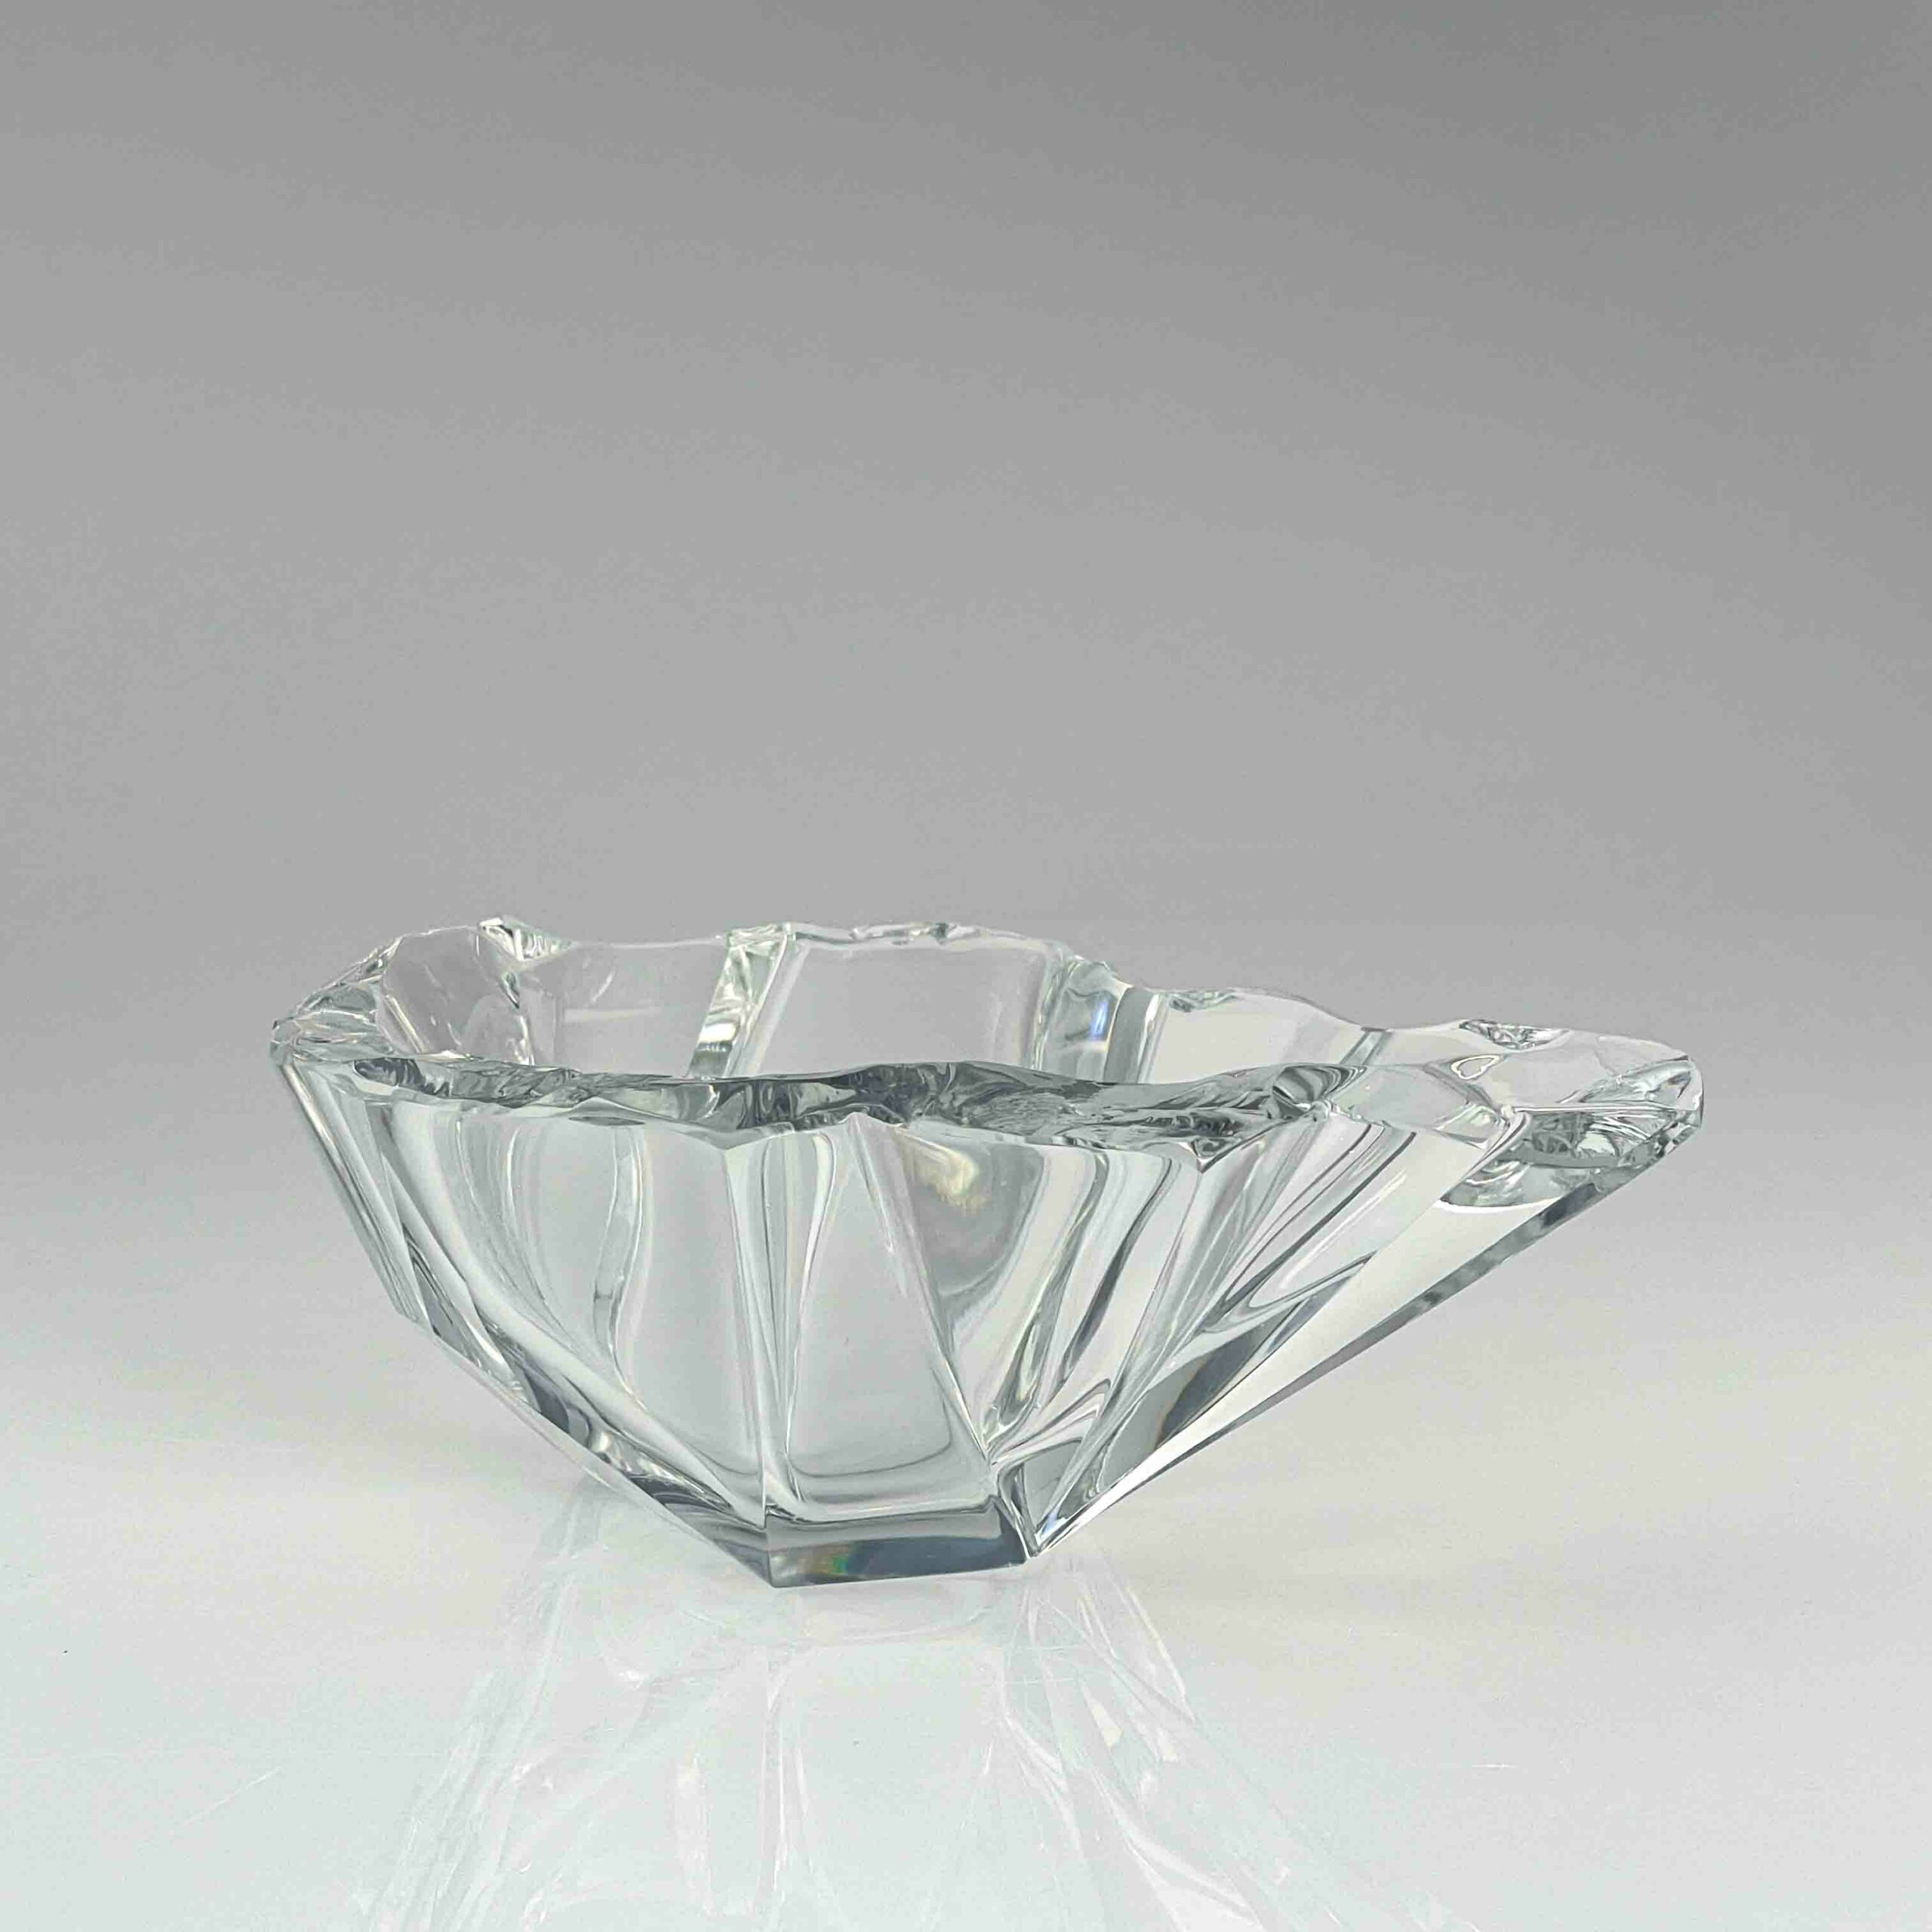 Tapio Wirkkala – A crystal Art-object “Jäänsäro” or “Iceblock”, model 3847 – Iittala, Finland circa 1960